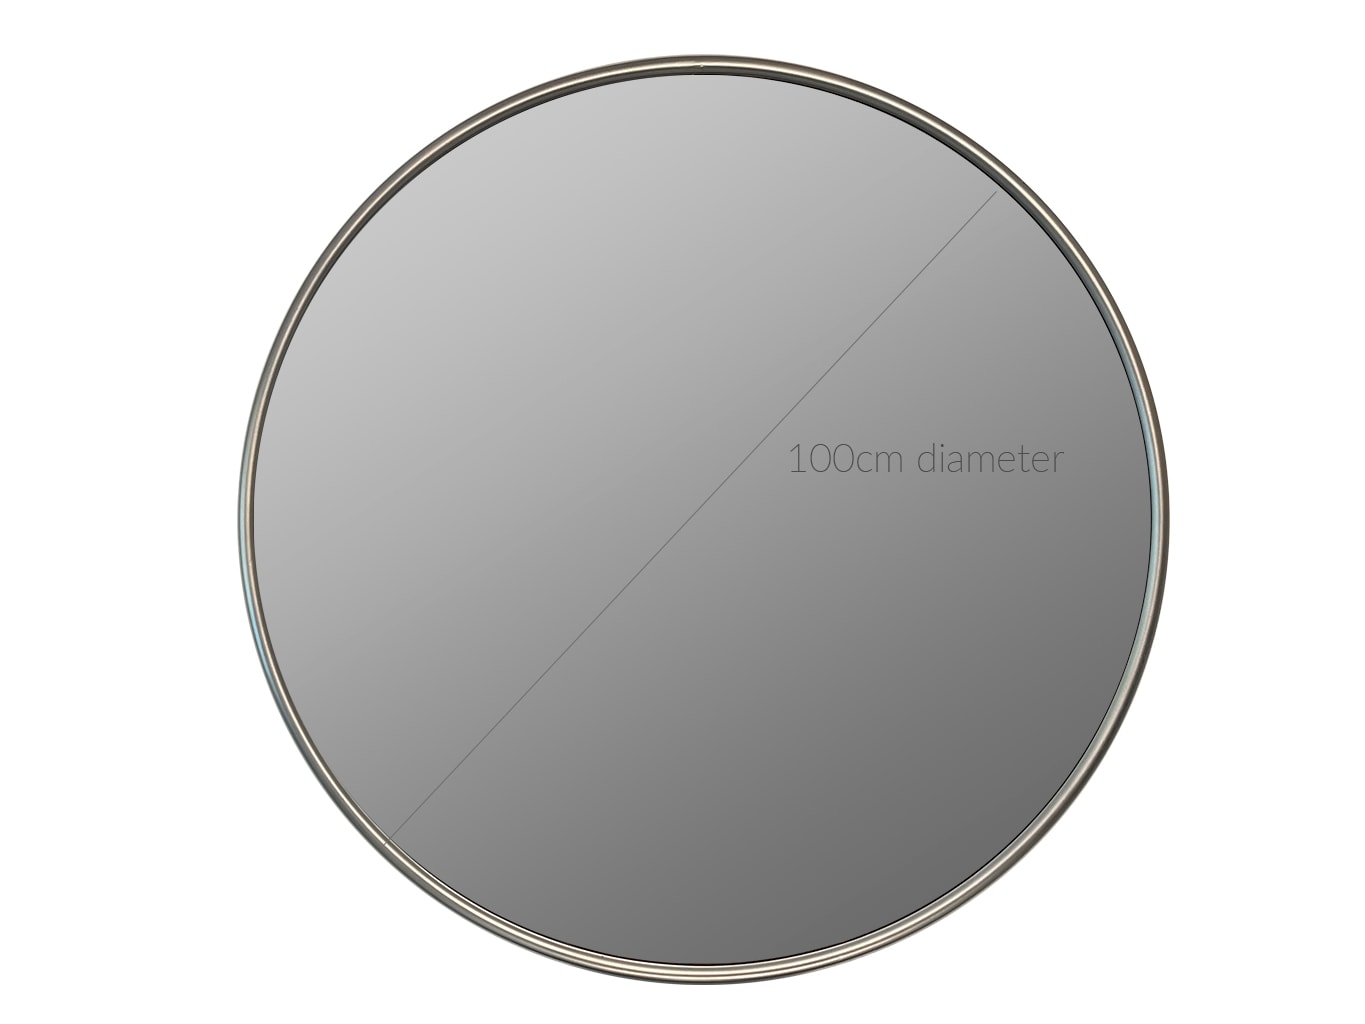 Round silver metal mirror